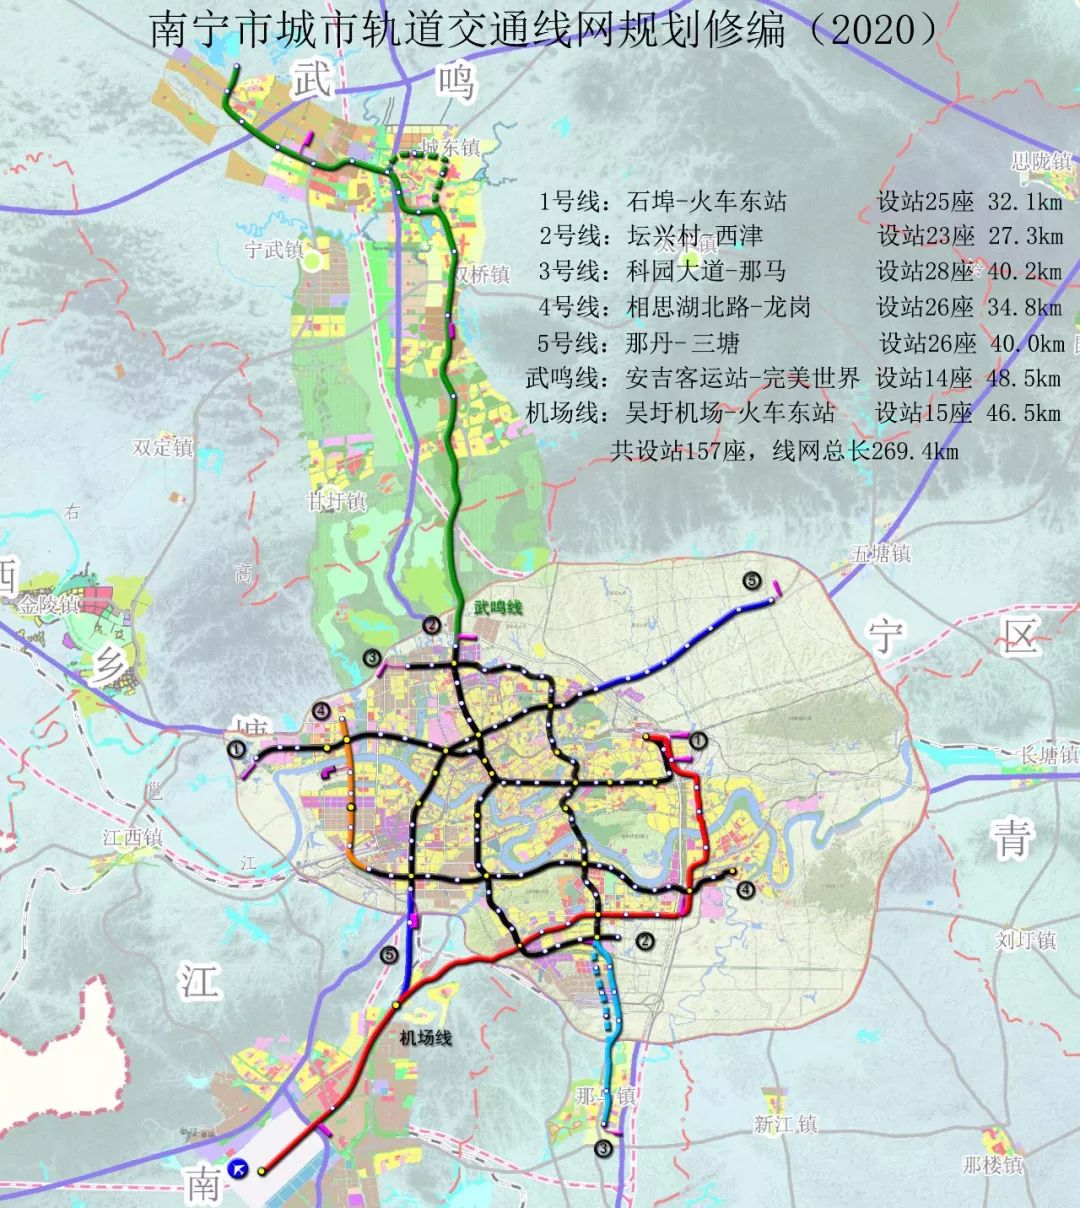 南宁将拥有5条地铁线 还有新增的机场线和武鸣线 南宁地铁规划图 南宁